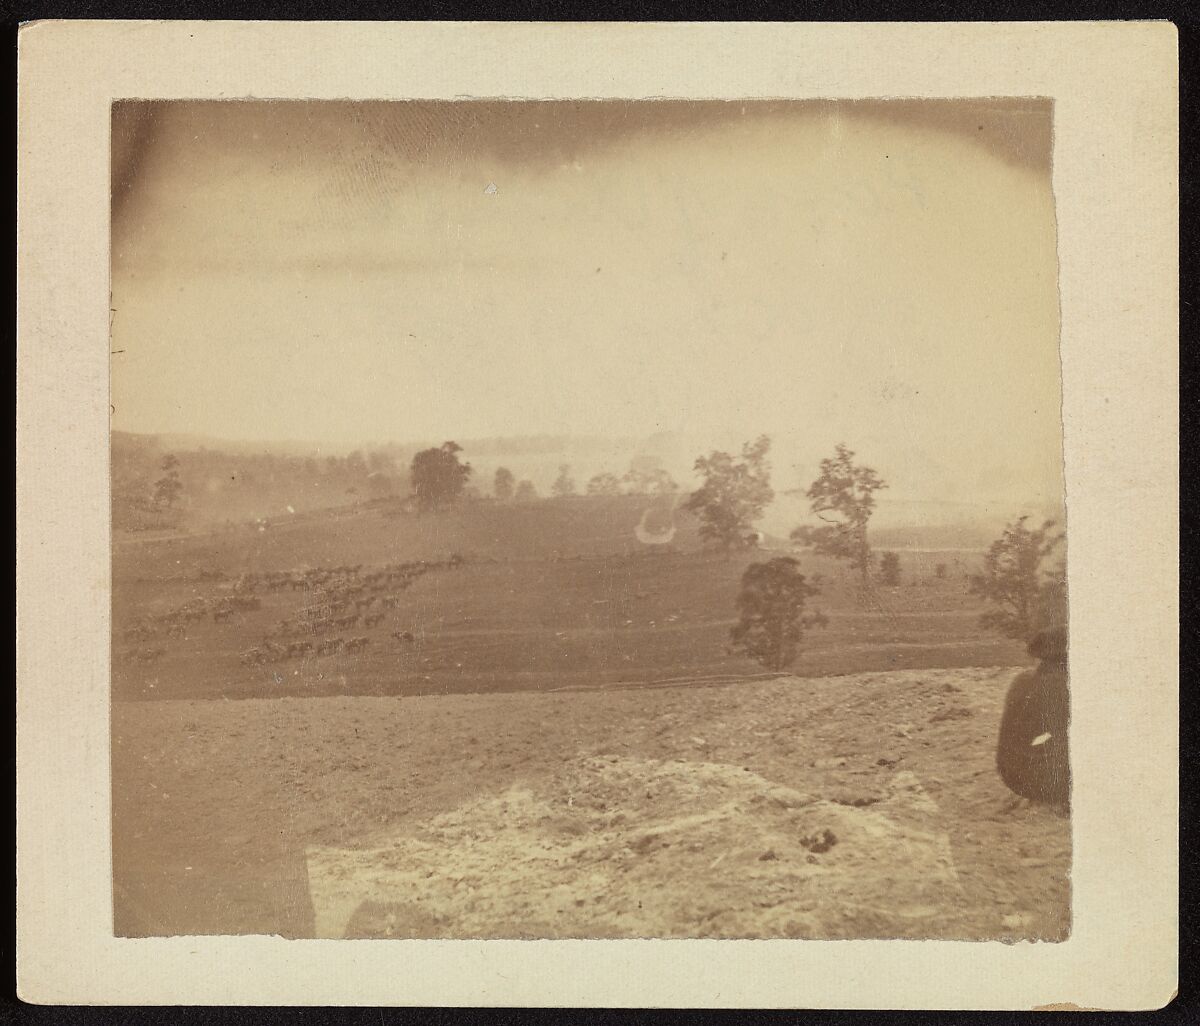 [Antietam Battlefield], Alexander Gardner (American, Glasgow, Scotland 1821–1882 Washington, D.C.), Albumen silver print from glass negative 